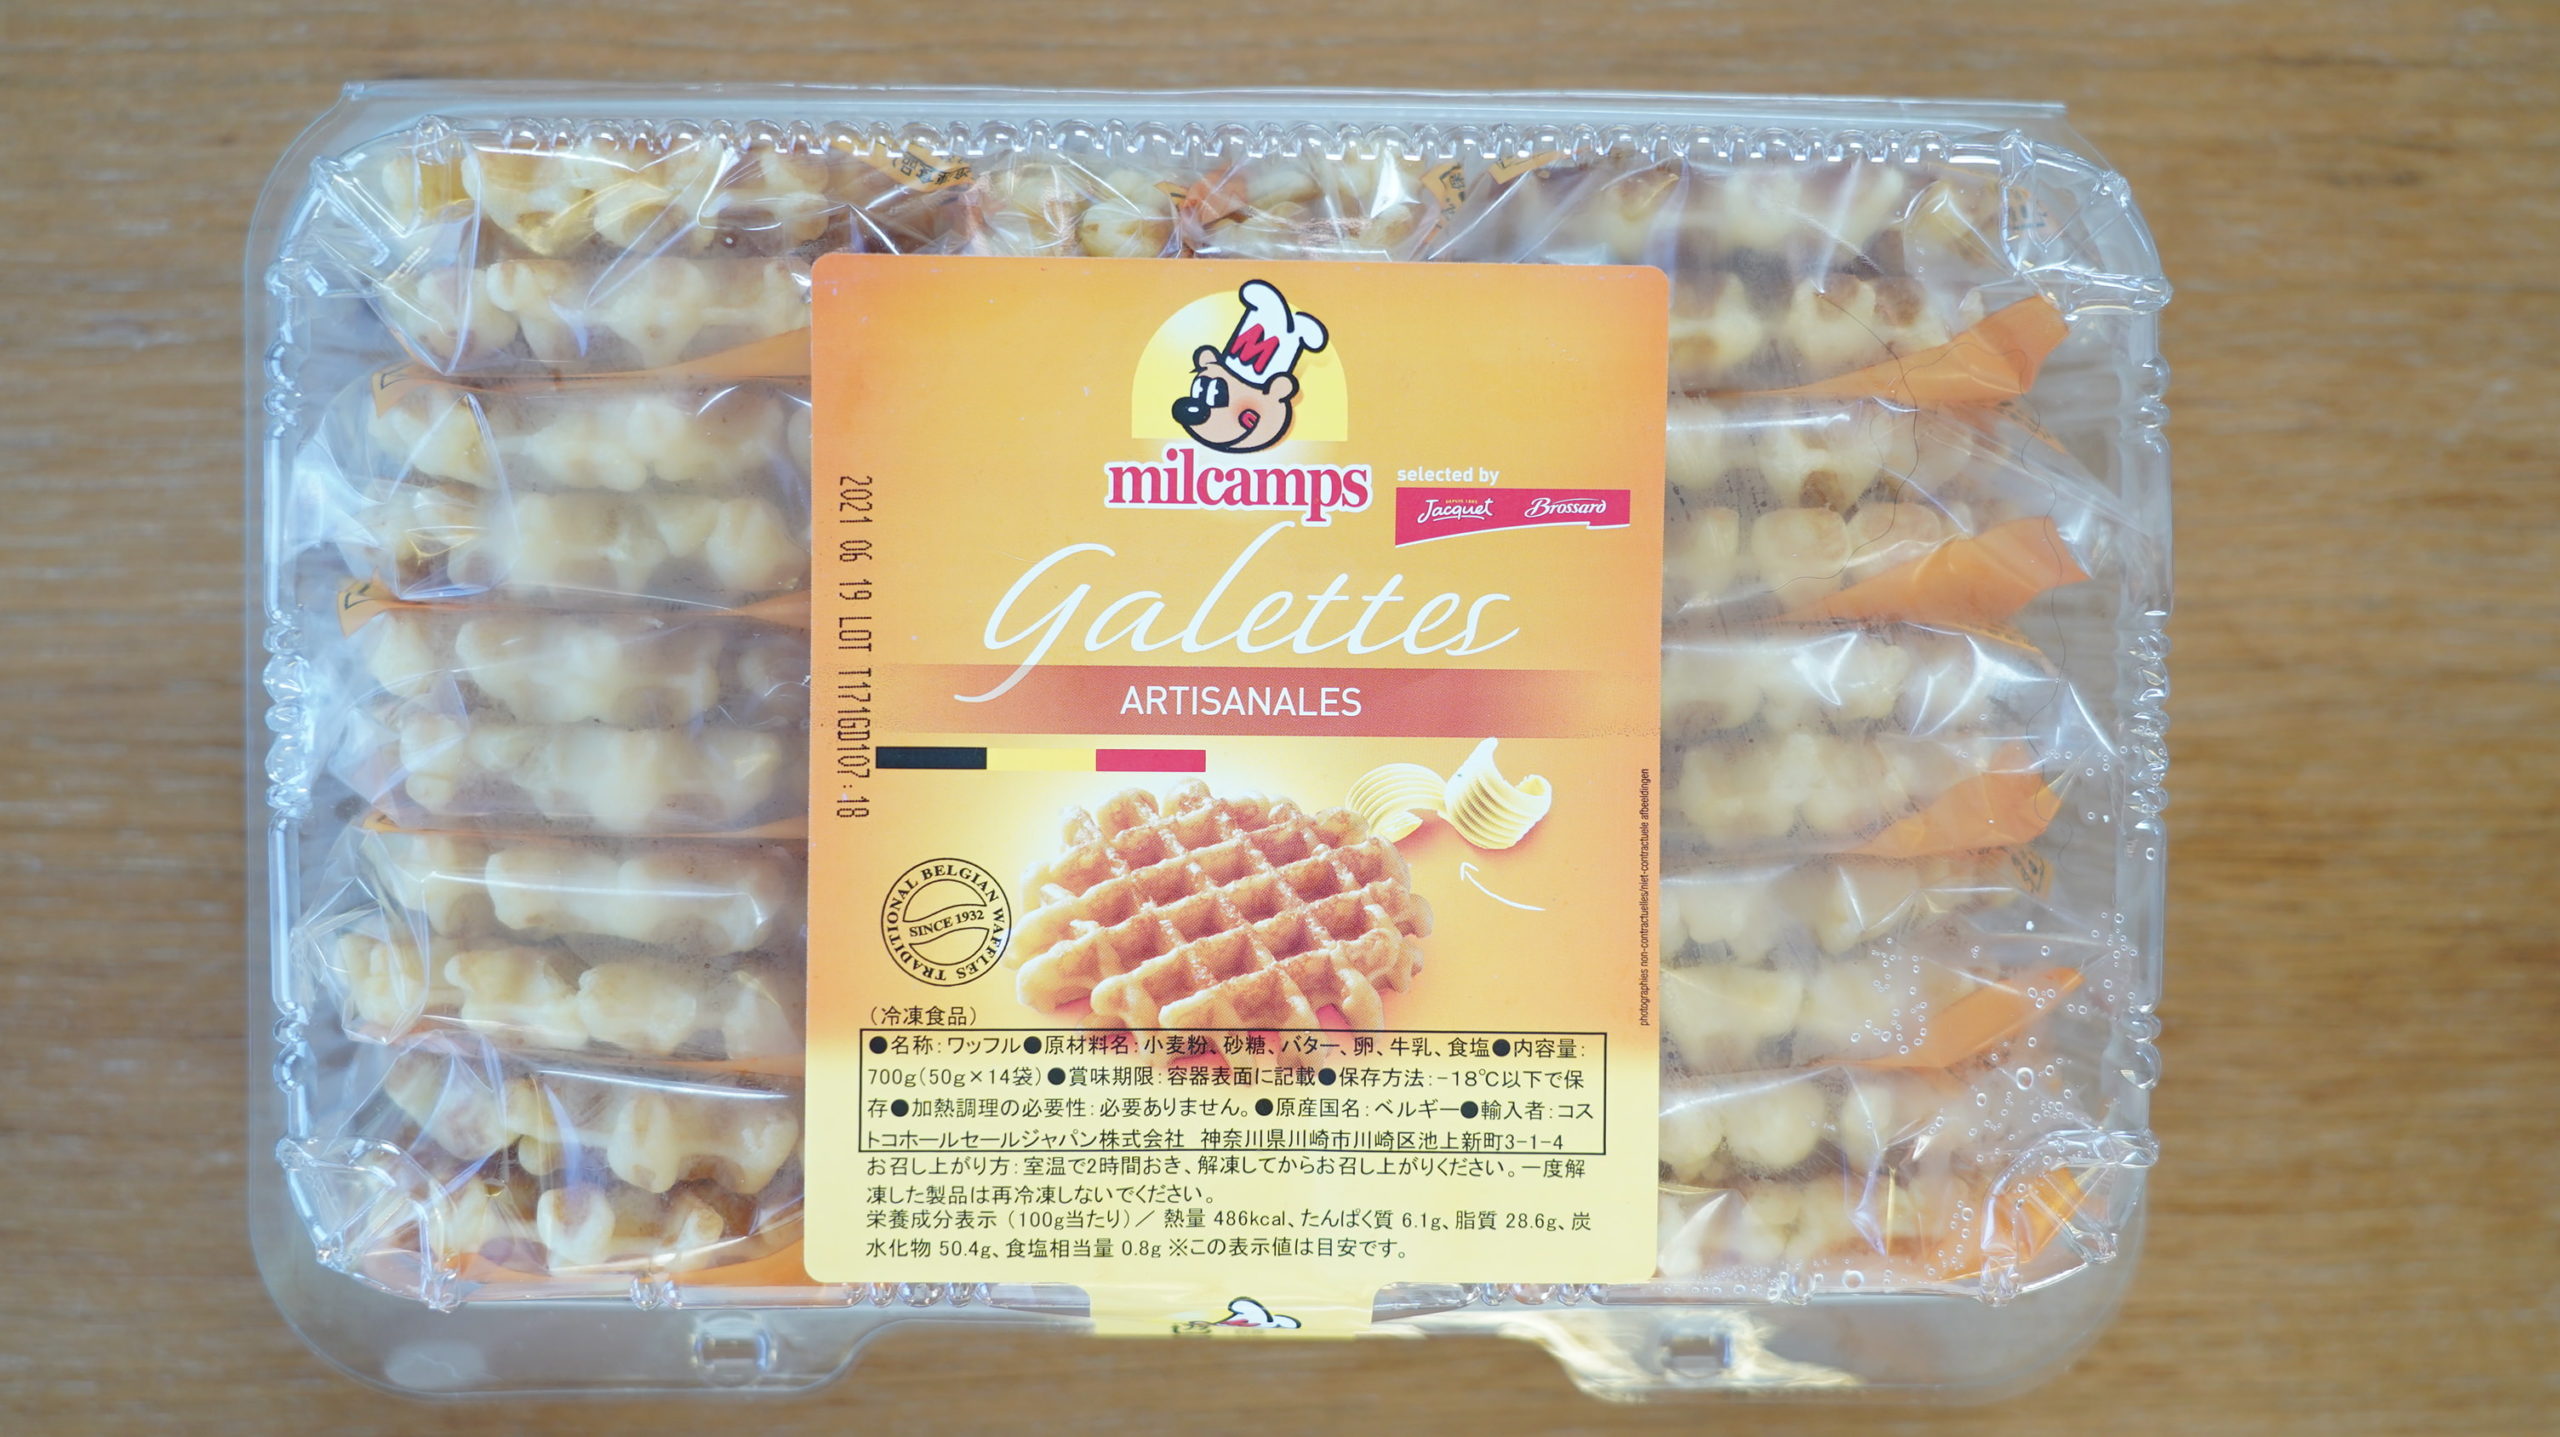 コストコの冷凍食品「ベルギー・バターワッフル」のパッケージの写真